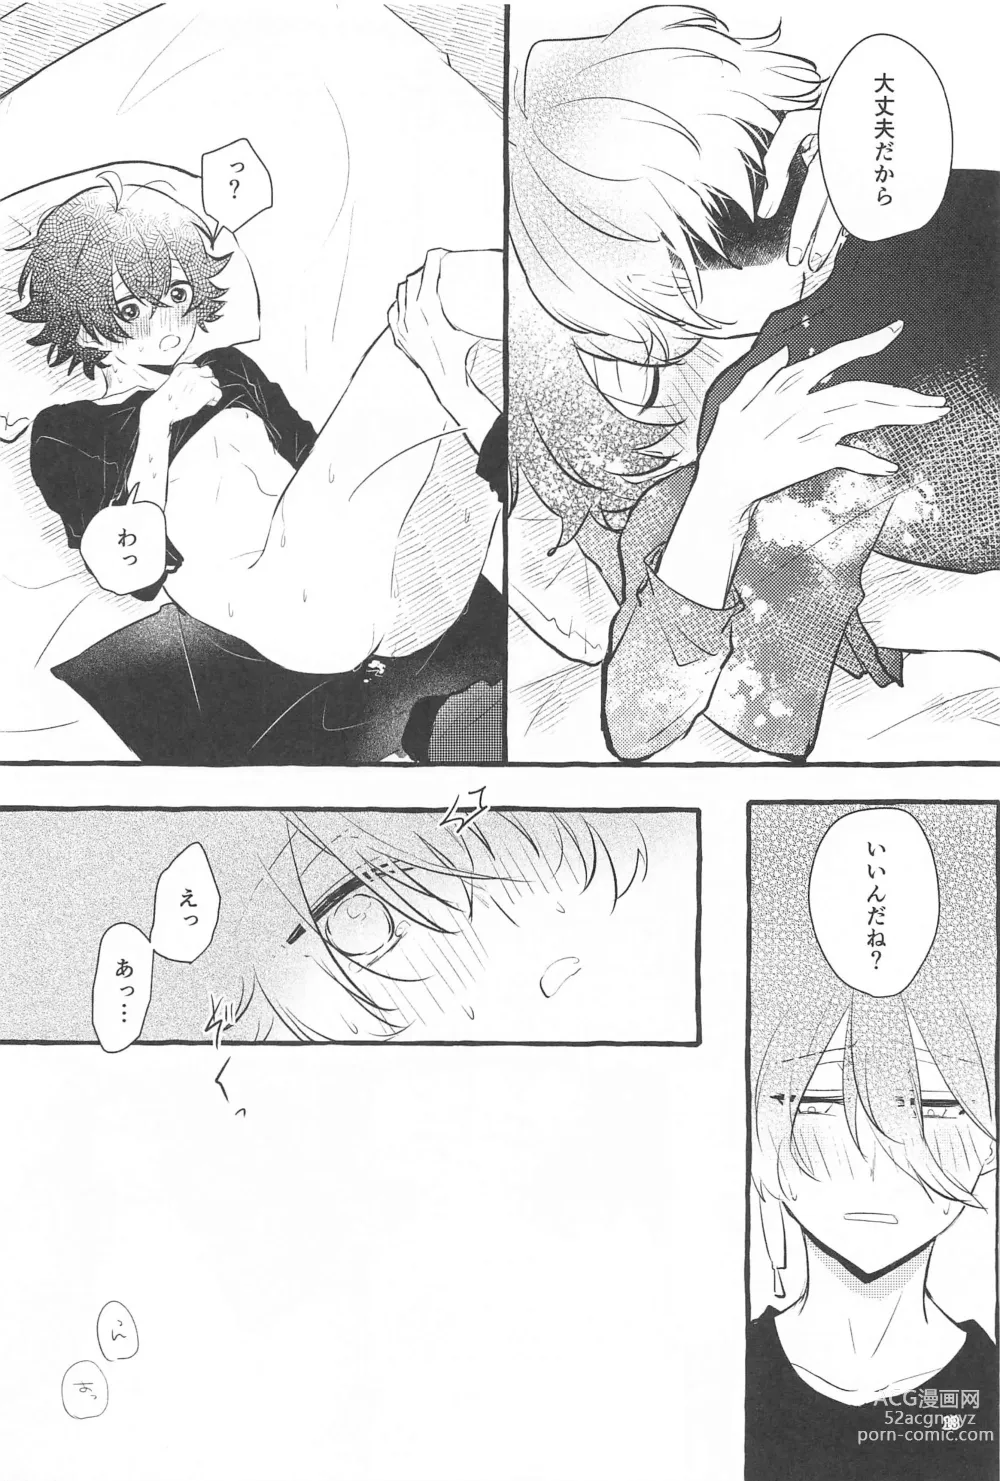 Page 12 of doujinshi Kanete kara no Setsubou de